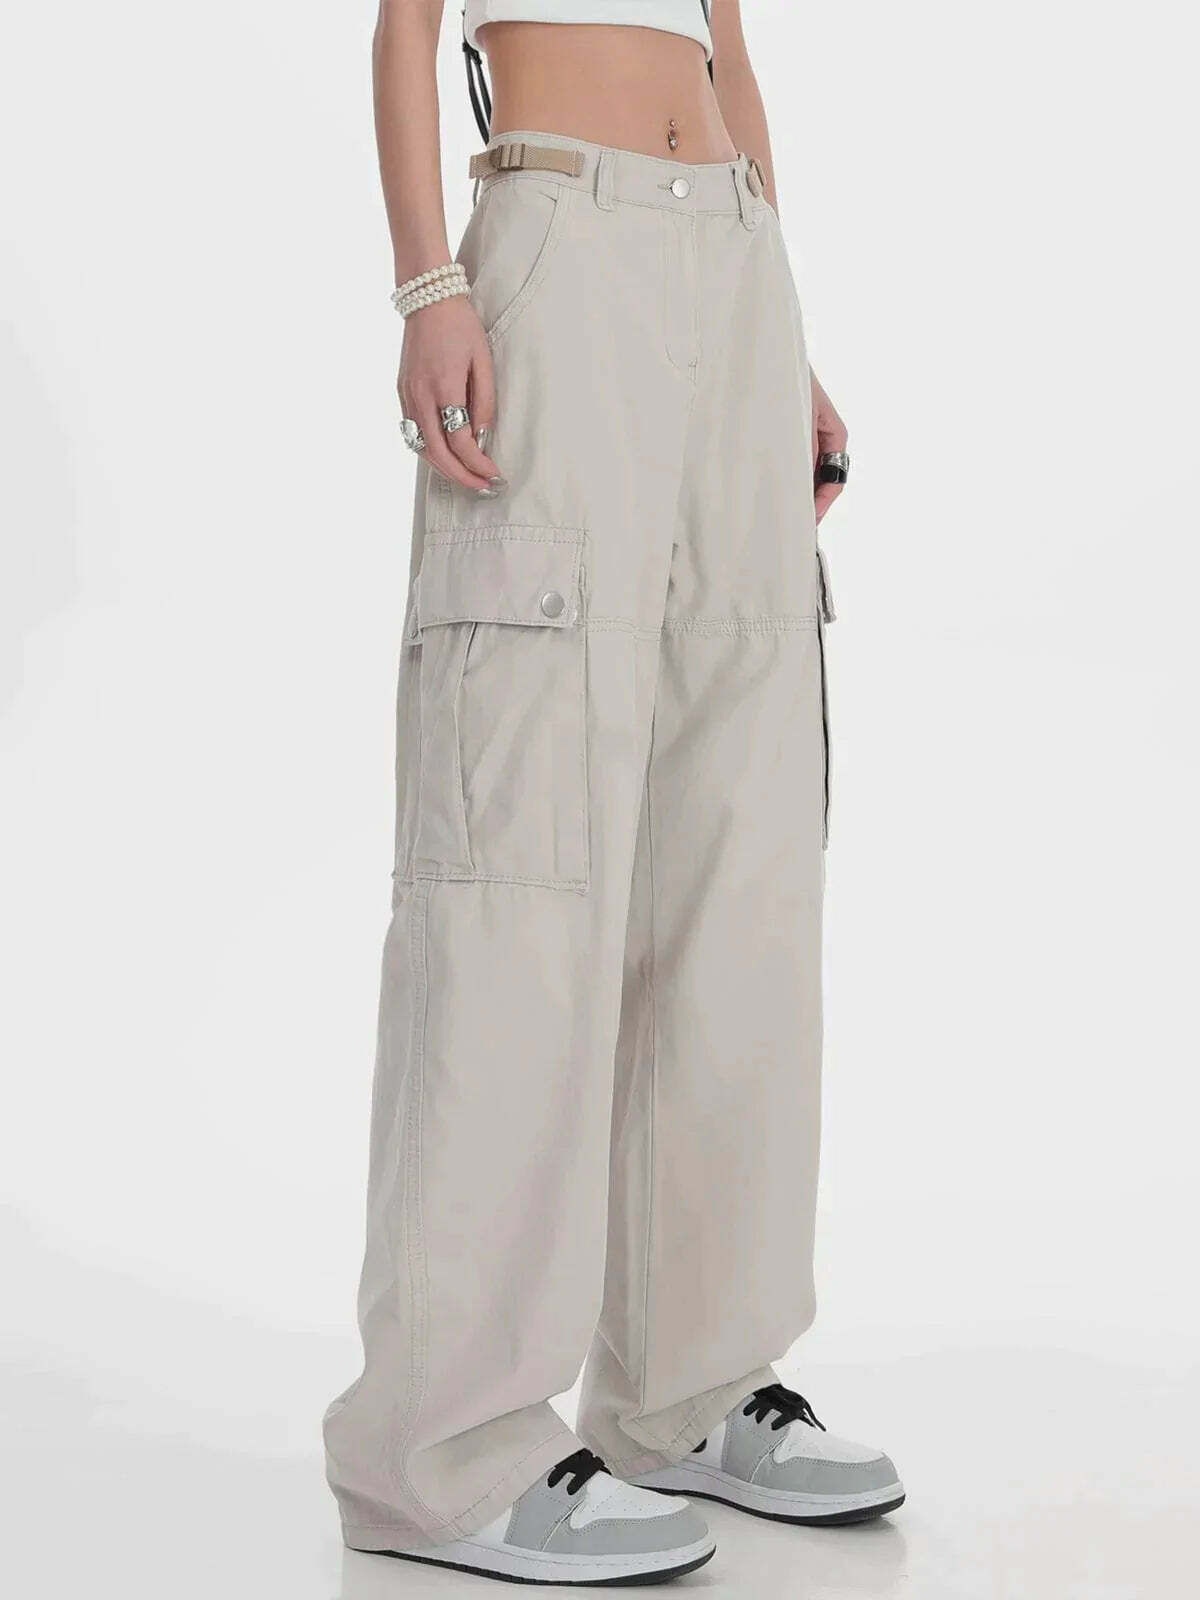 y2k cargo pants urban streetwear essential 4044